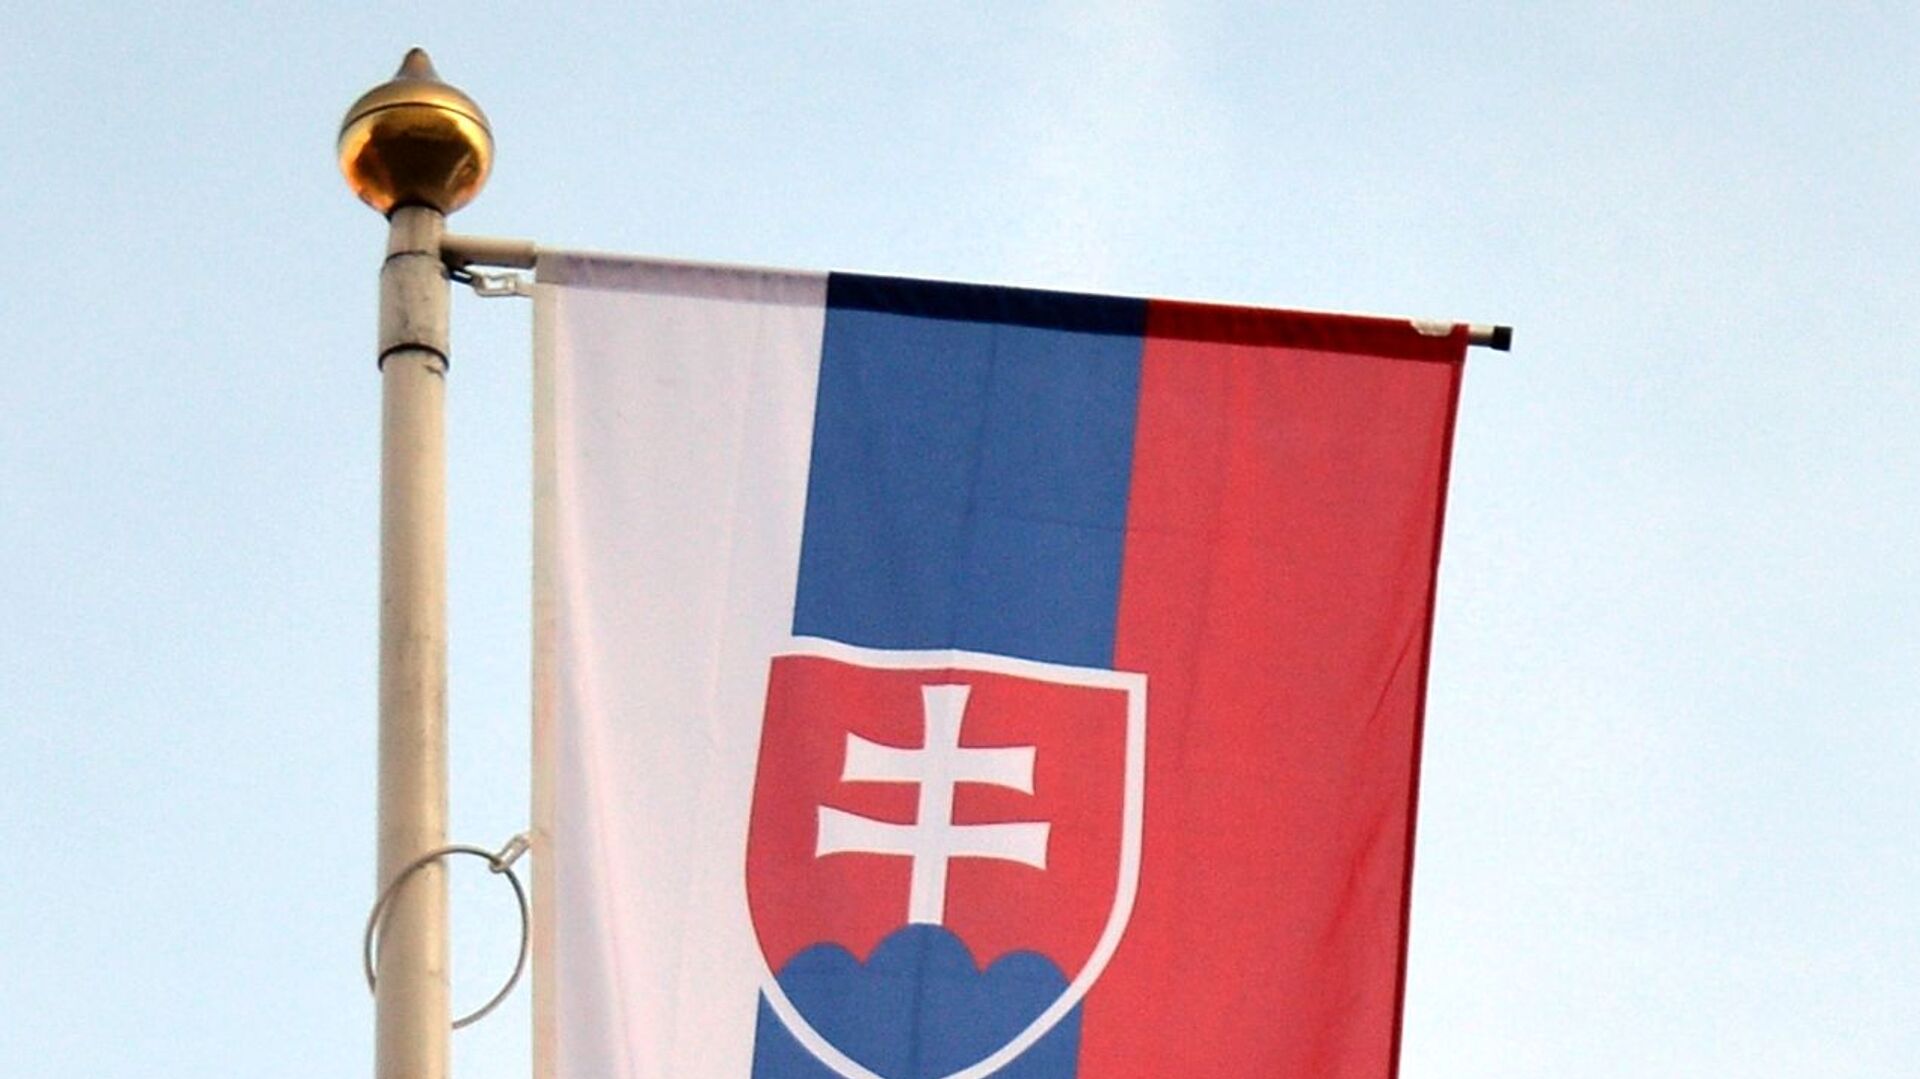 Словакия отвергла миграционный пакт ЕС